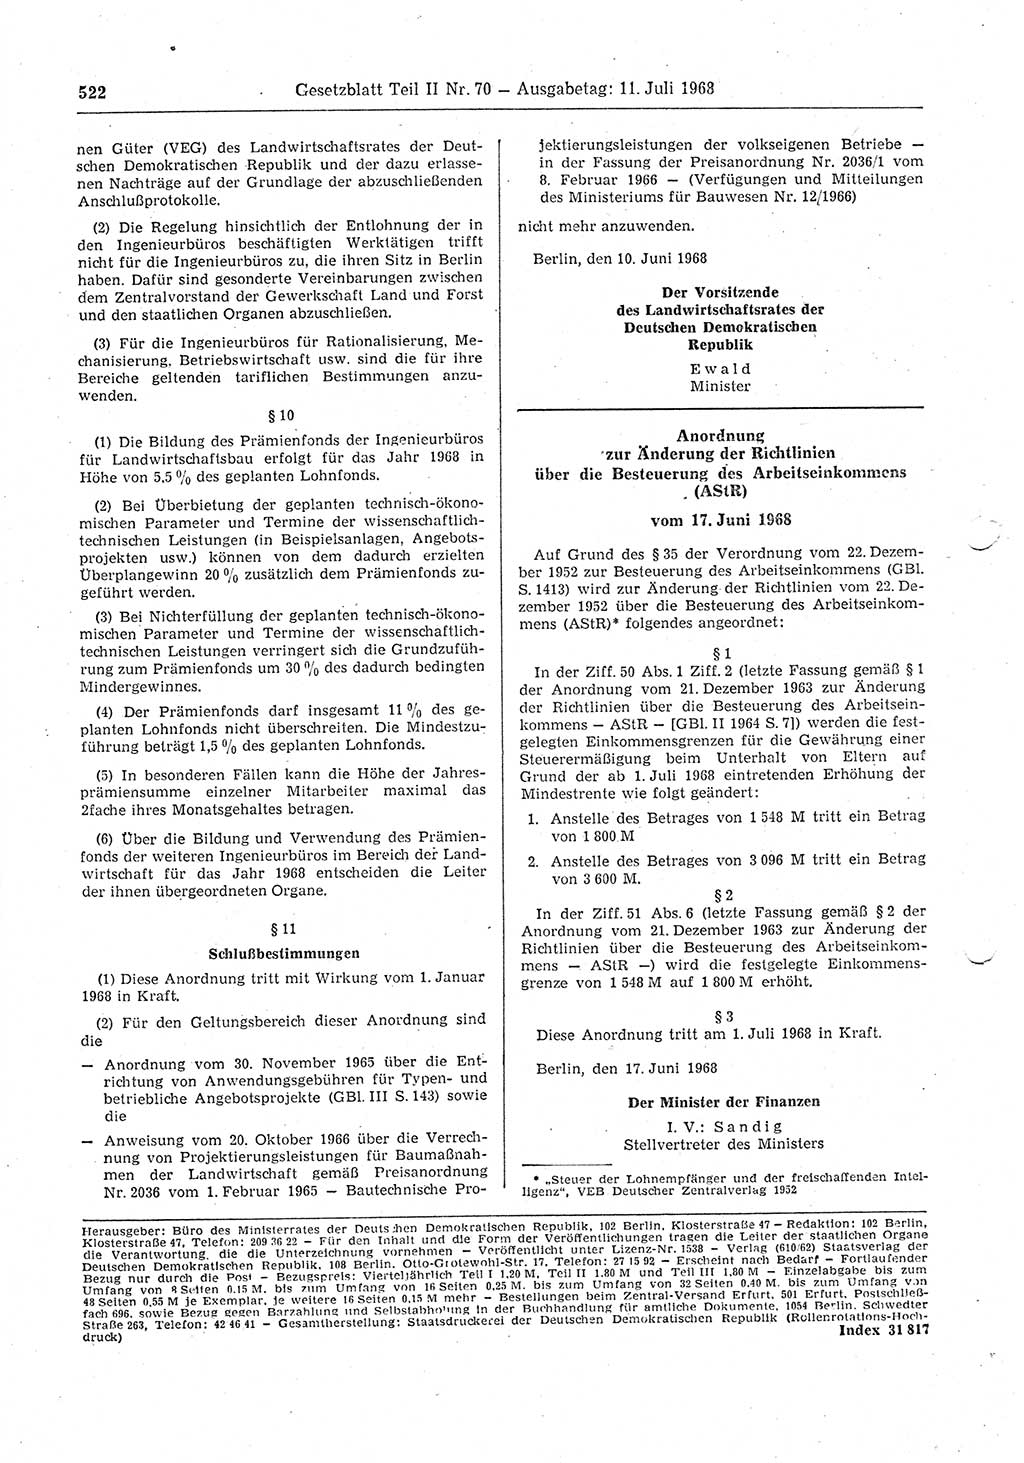 Gesetzblatt (GBl.) der Deutschen Demokratischen Republik (DDR) Teil ⅠⅠ 1968, Seite 522 (GBl. DDR ⅠⅠ 1968, S. 522)